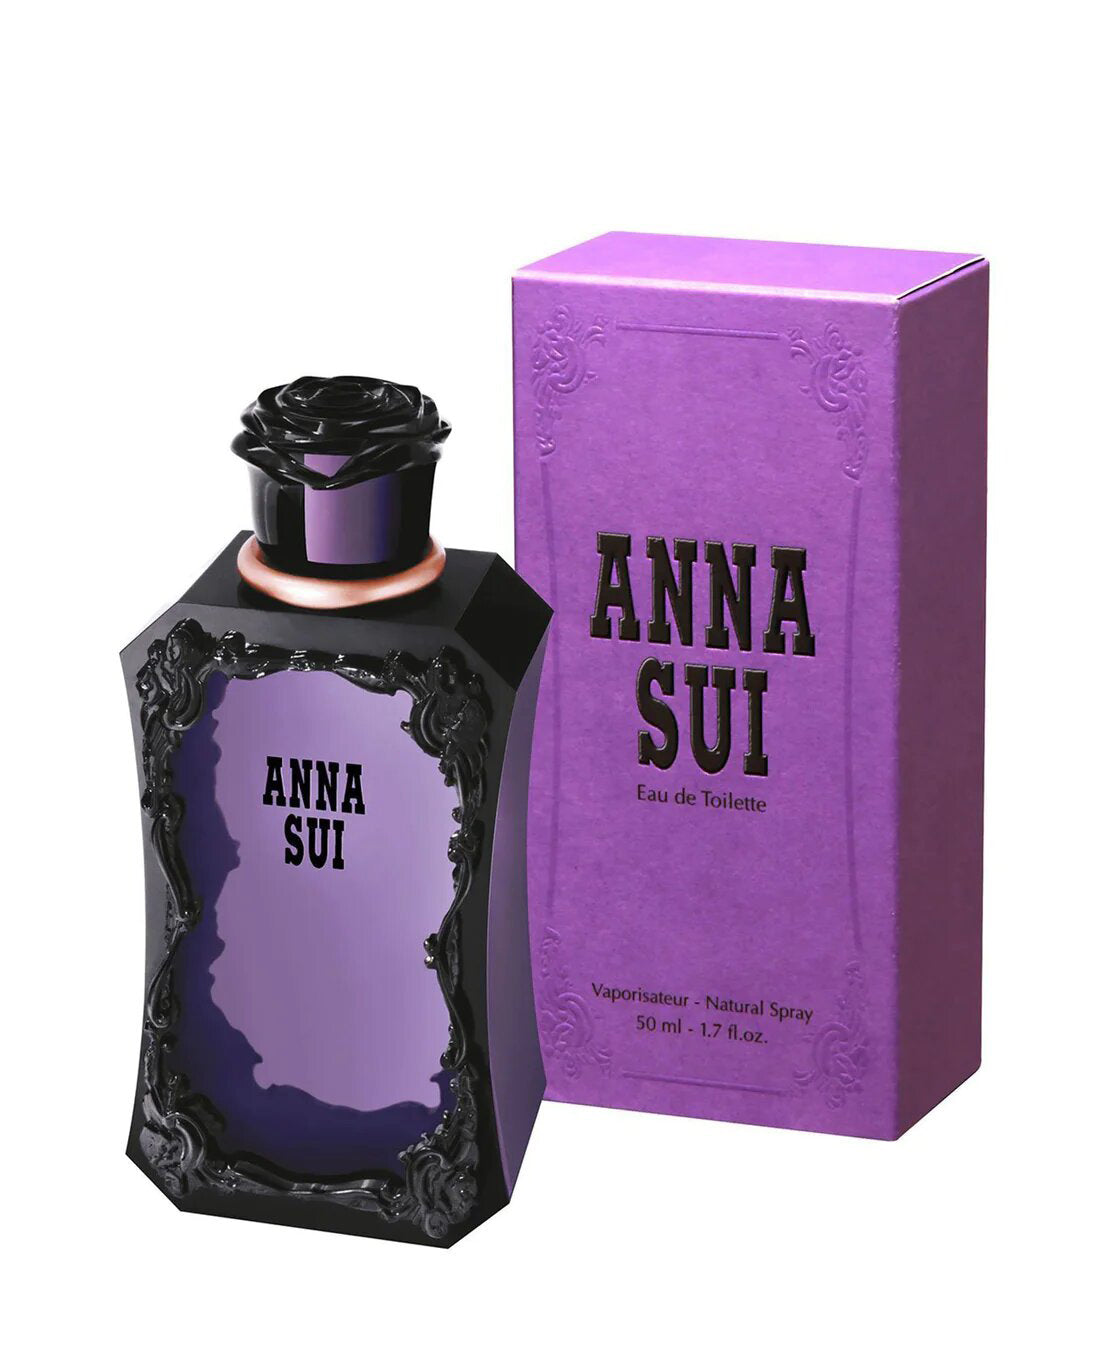 Anna Sui Eau de Toilette Spray 50 ml for Women